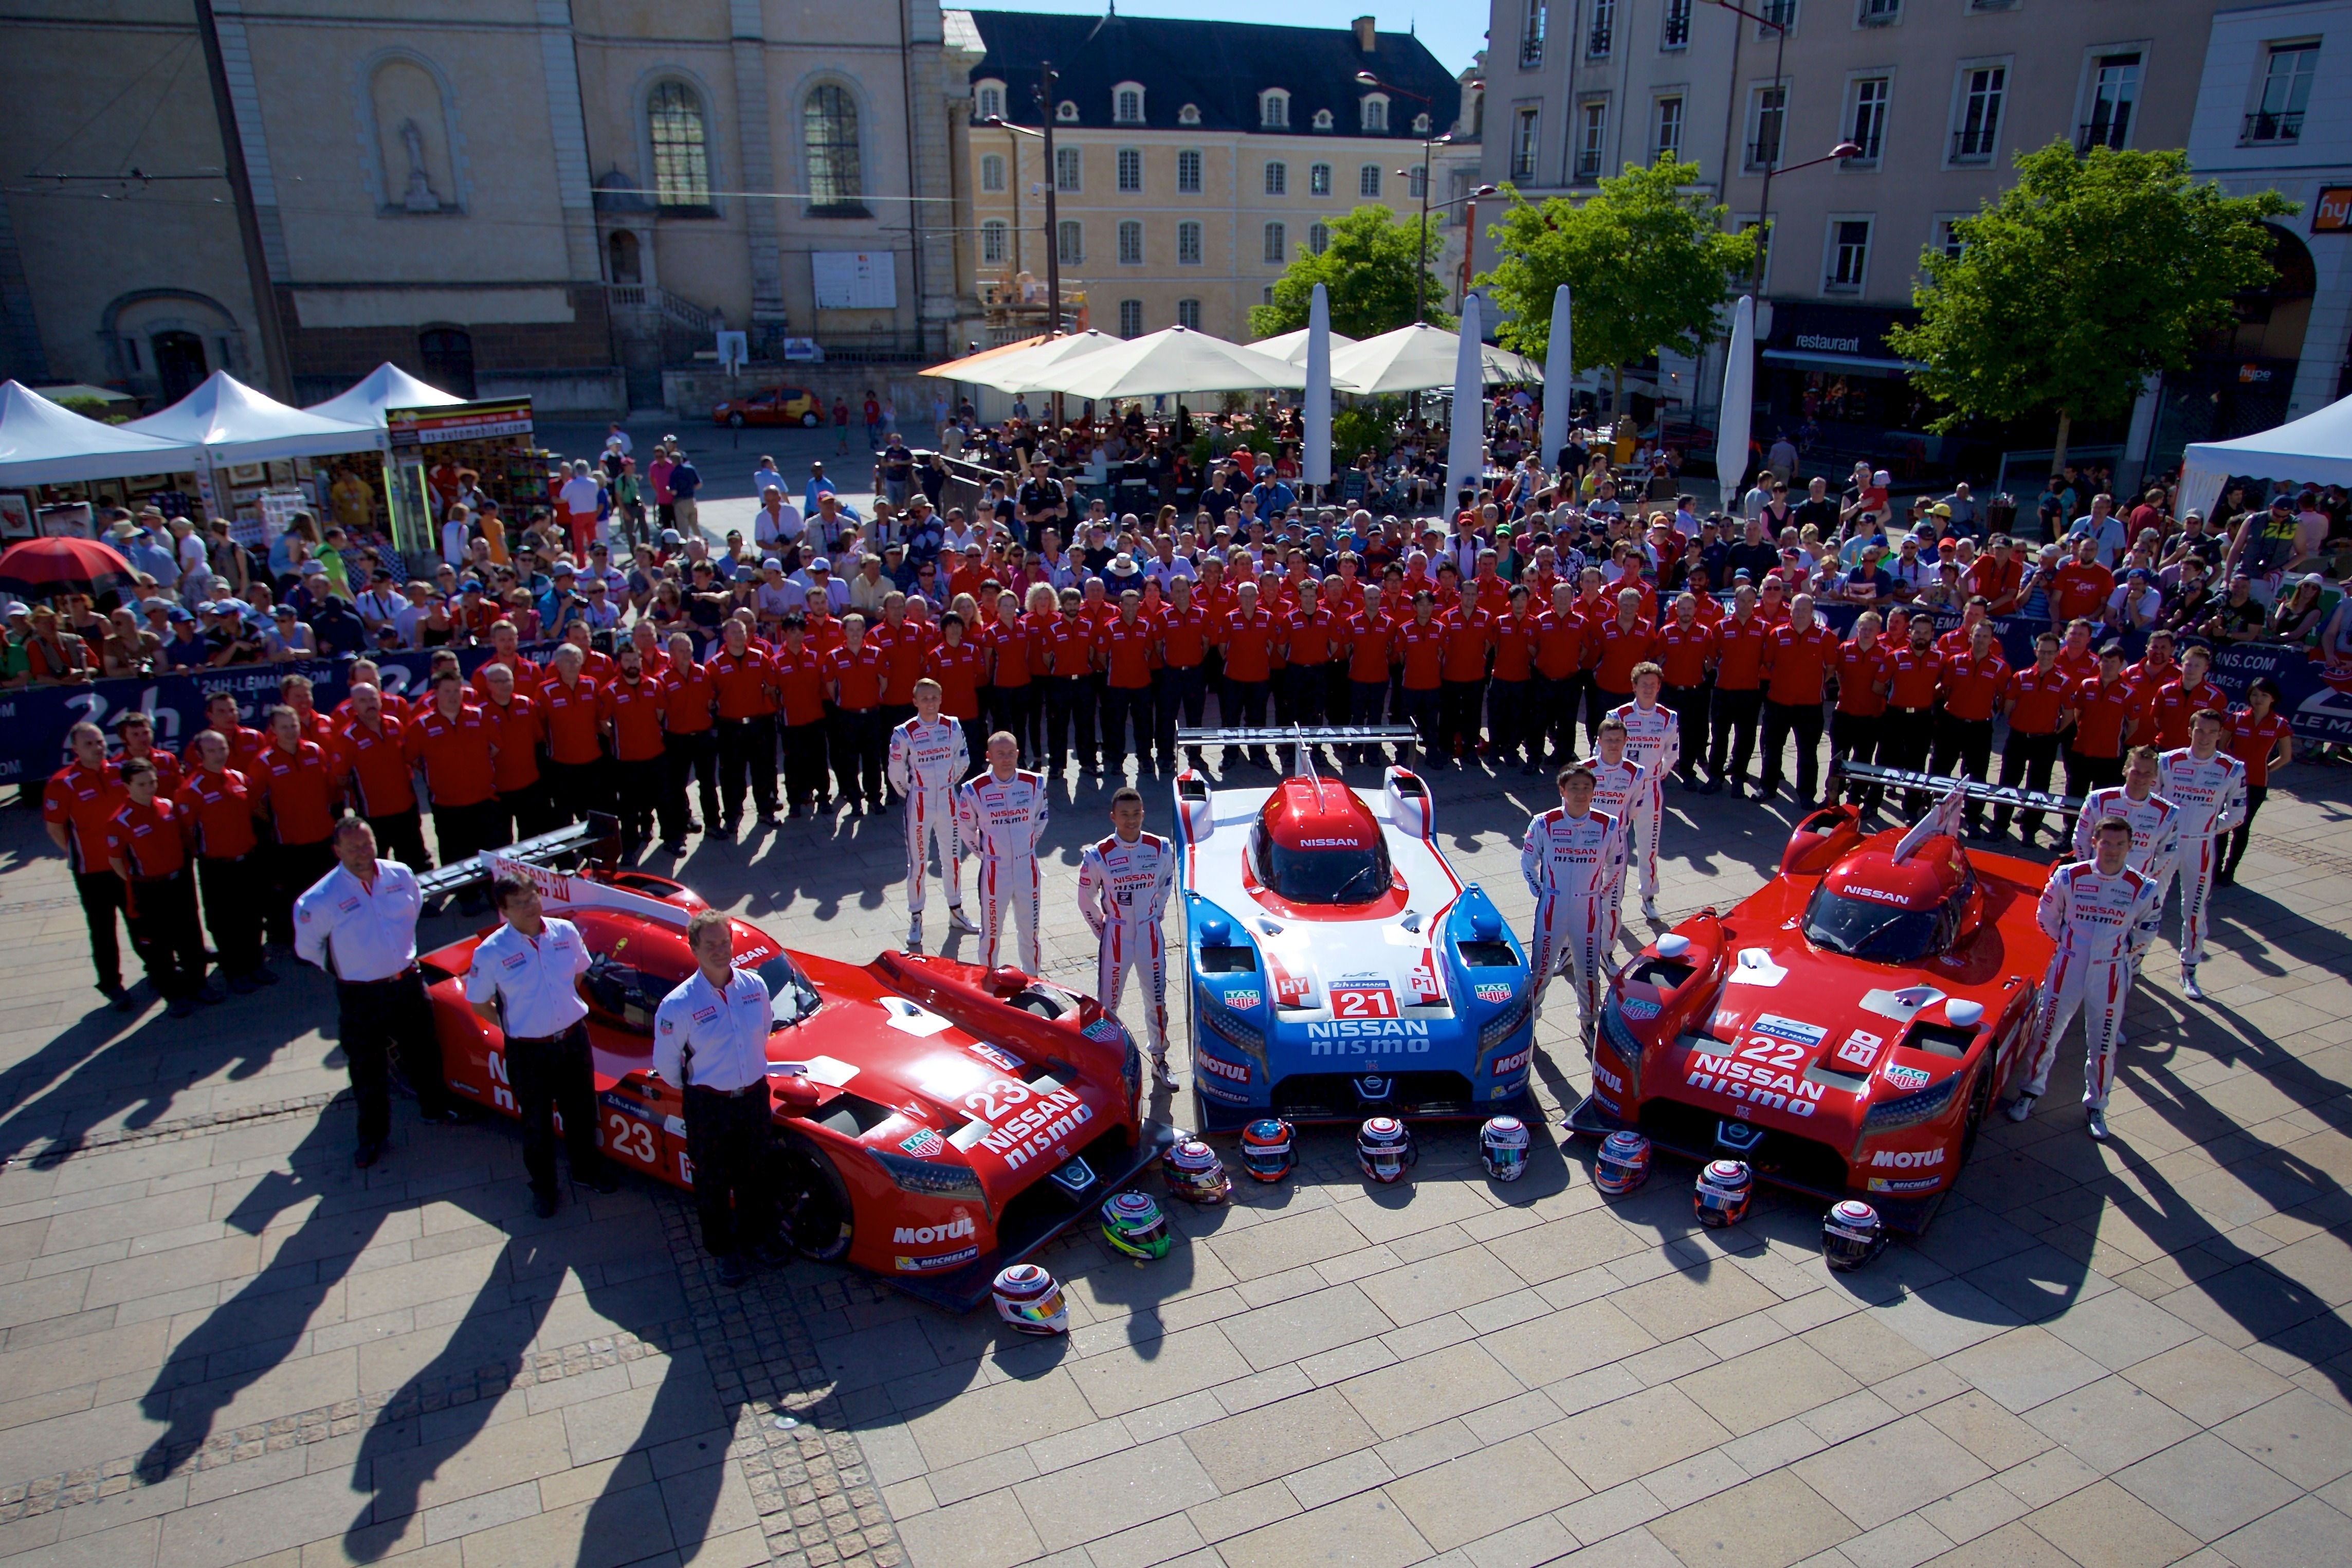 Le-Mans-2015-Nissan-scrutineering.jpg